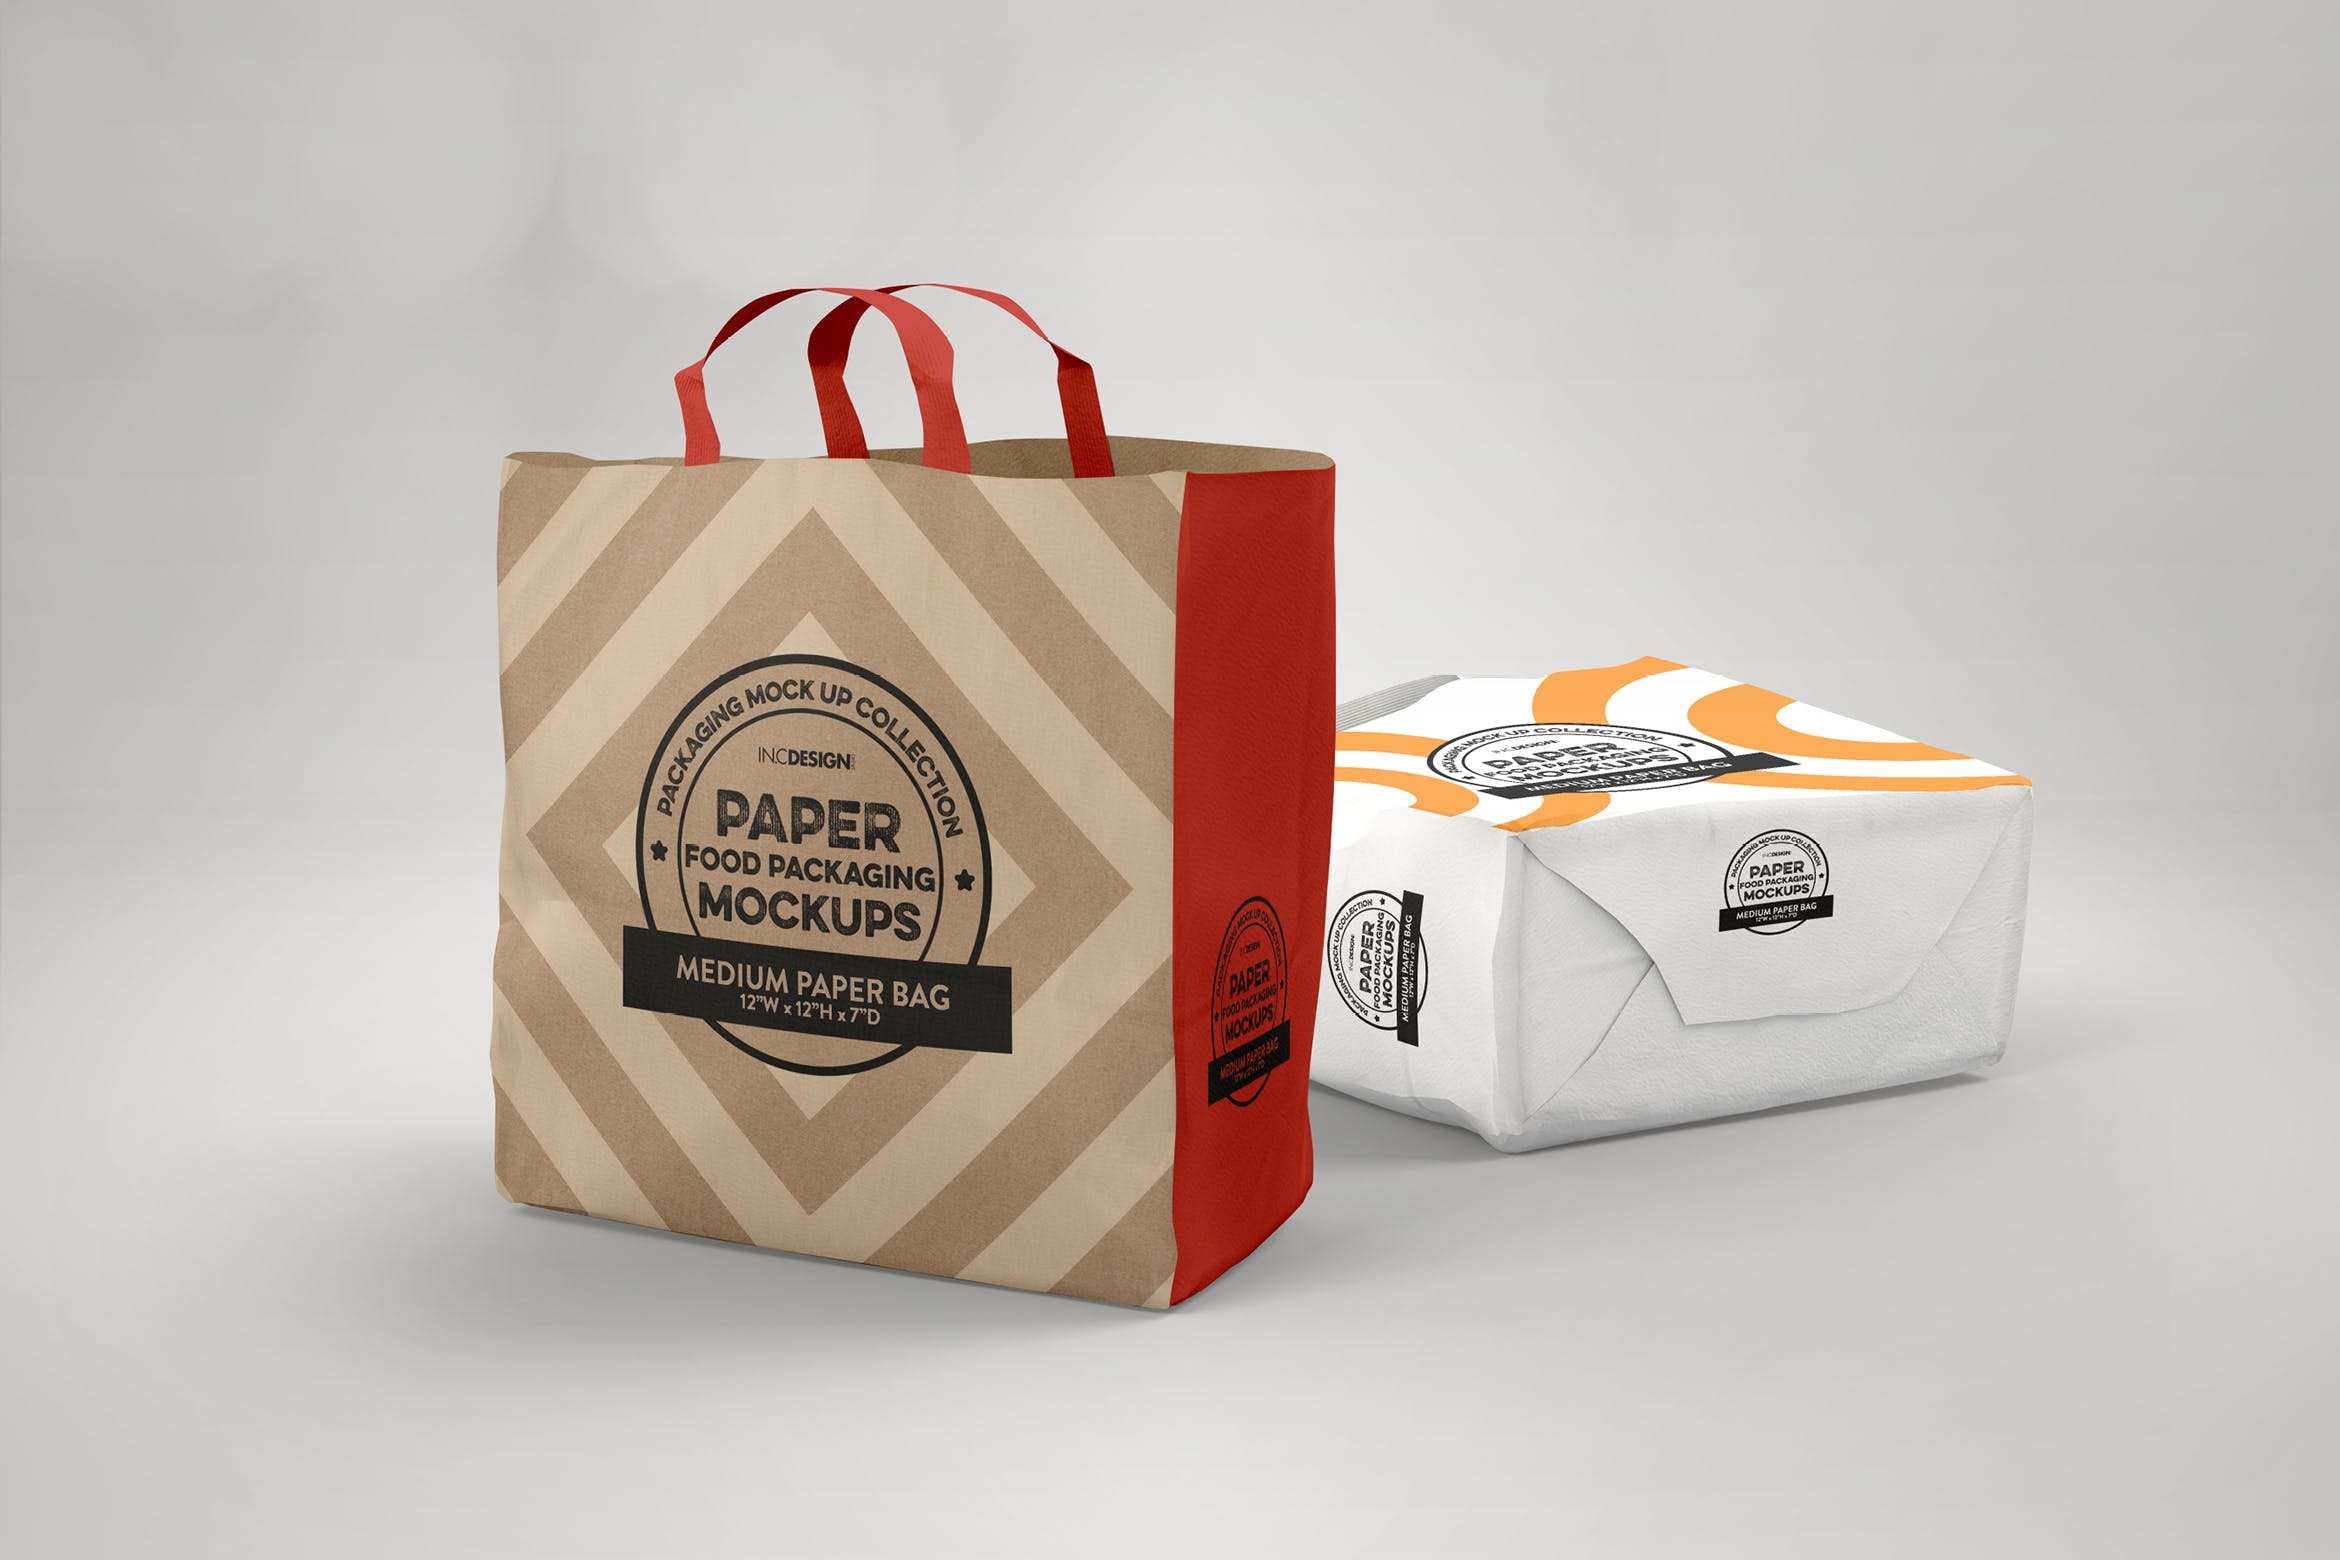 中型纸袋包装设计效果图蚂蚁素材精选 Medium Paper Bags Packaging Mockup插图